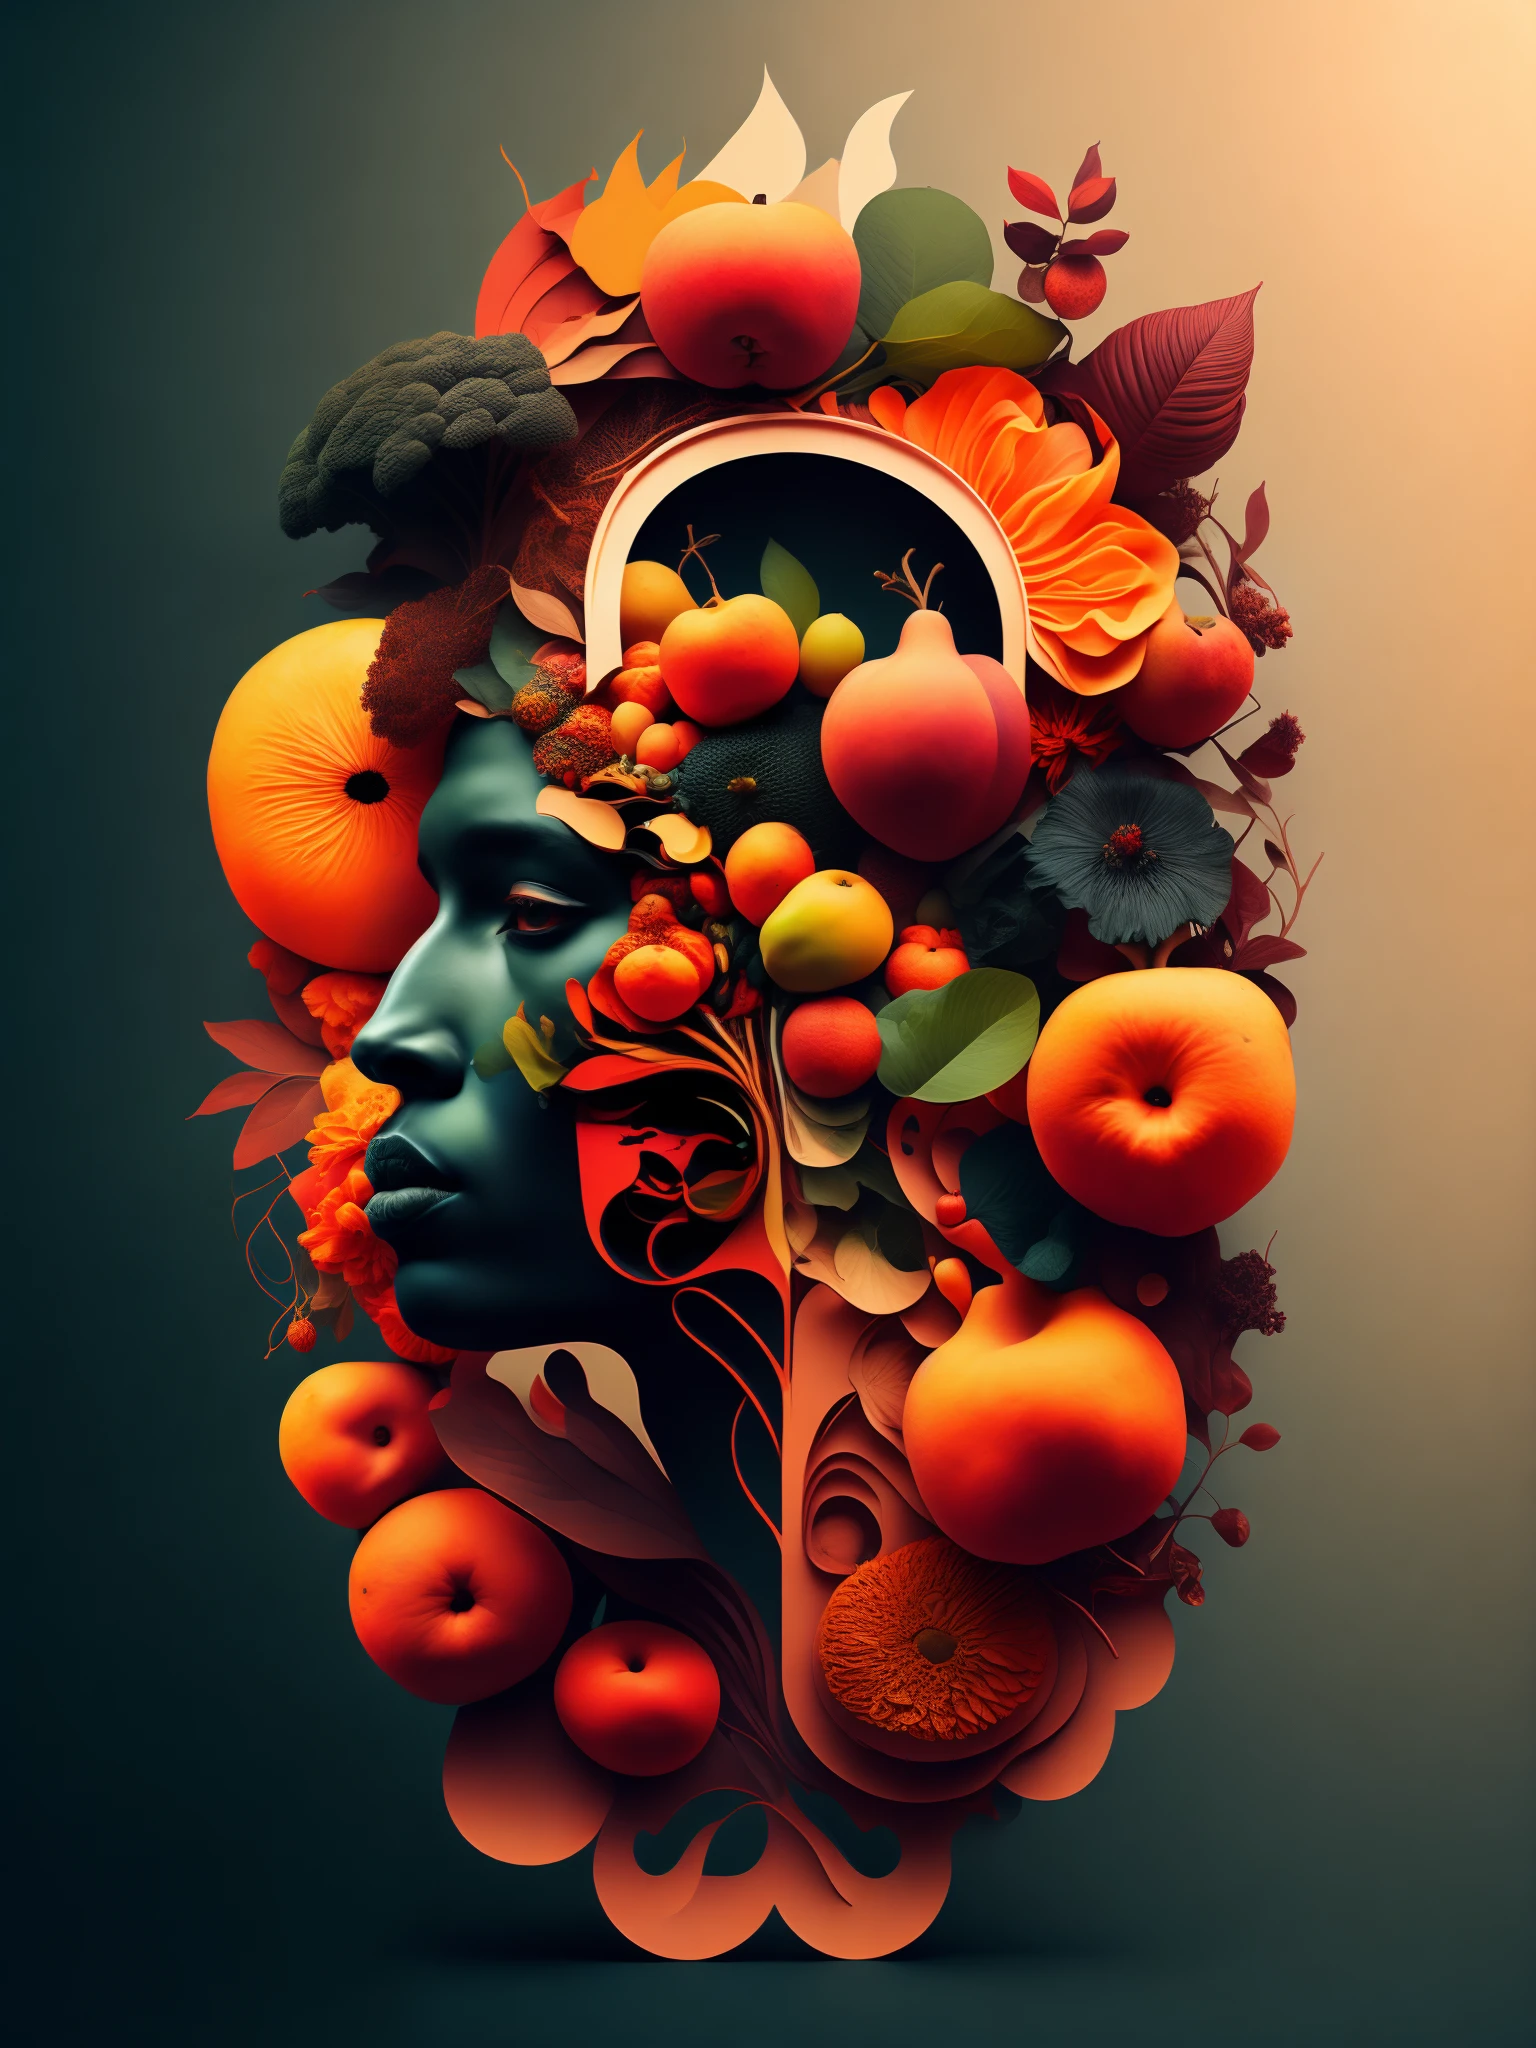 さまざまな果物や花を持つ男性の正面図を様式化した画像